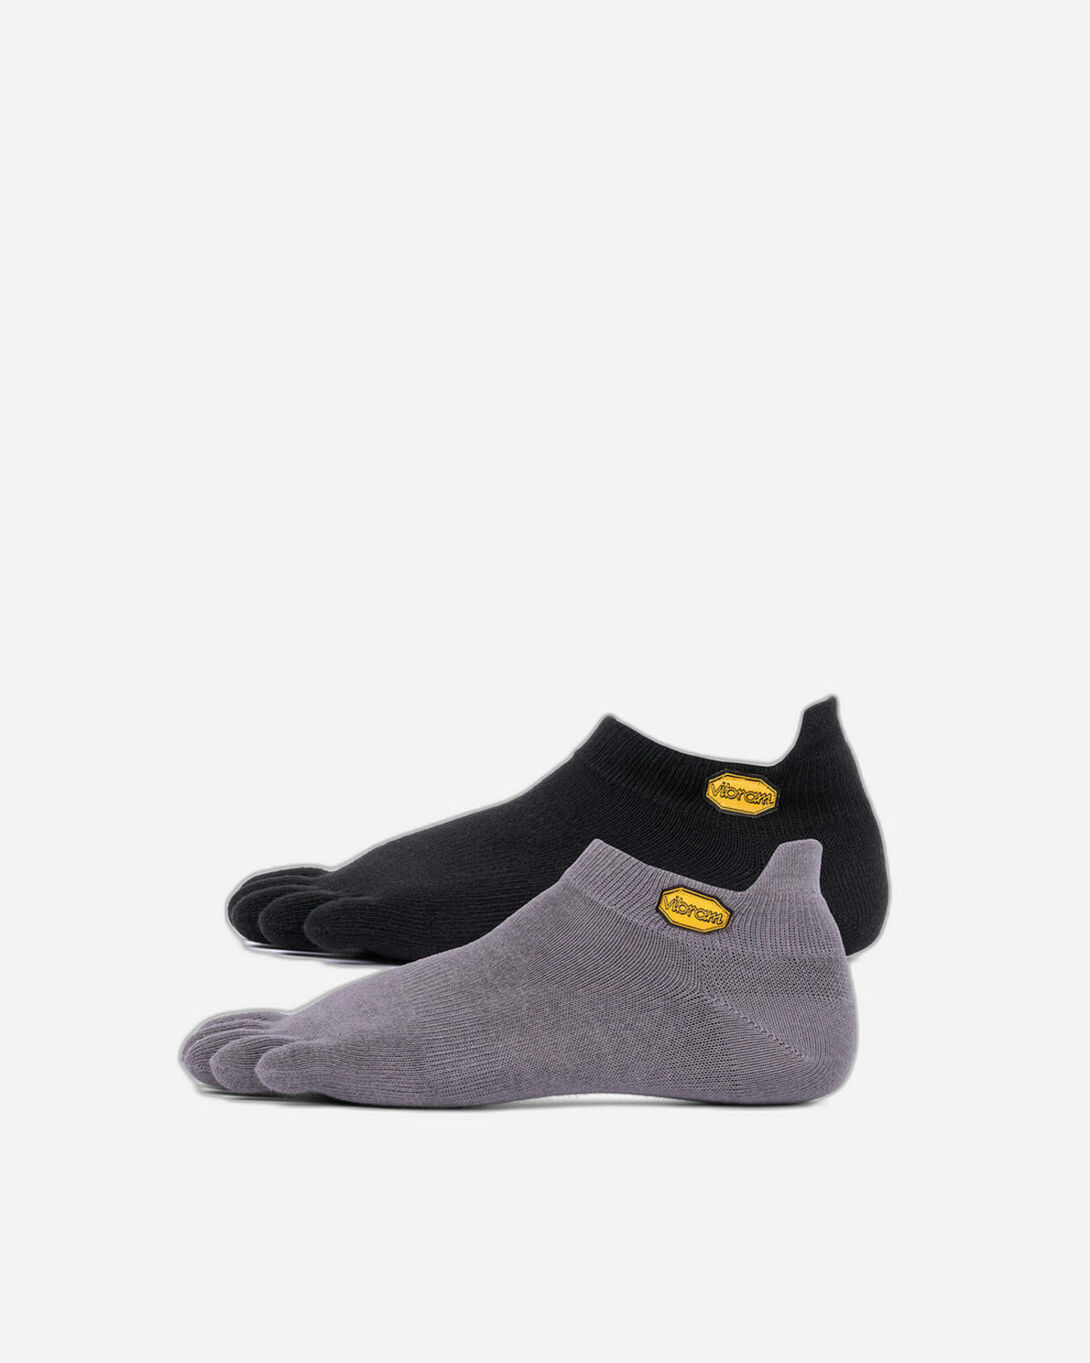 socks for vibram five finger shoes